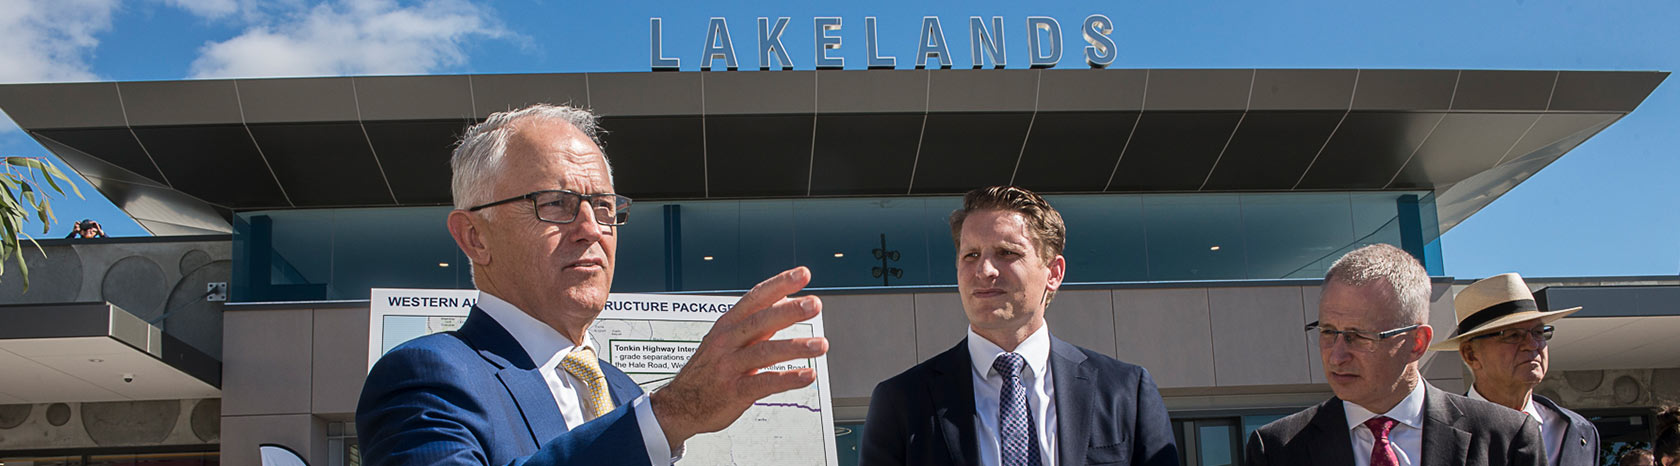 Prime Minister visits Lakelands Estate